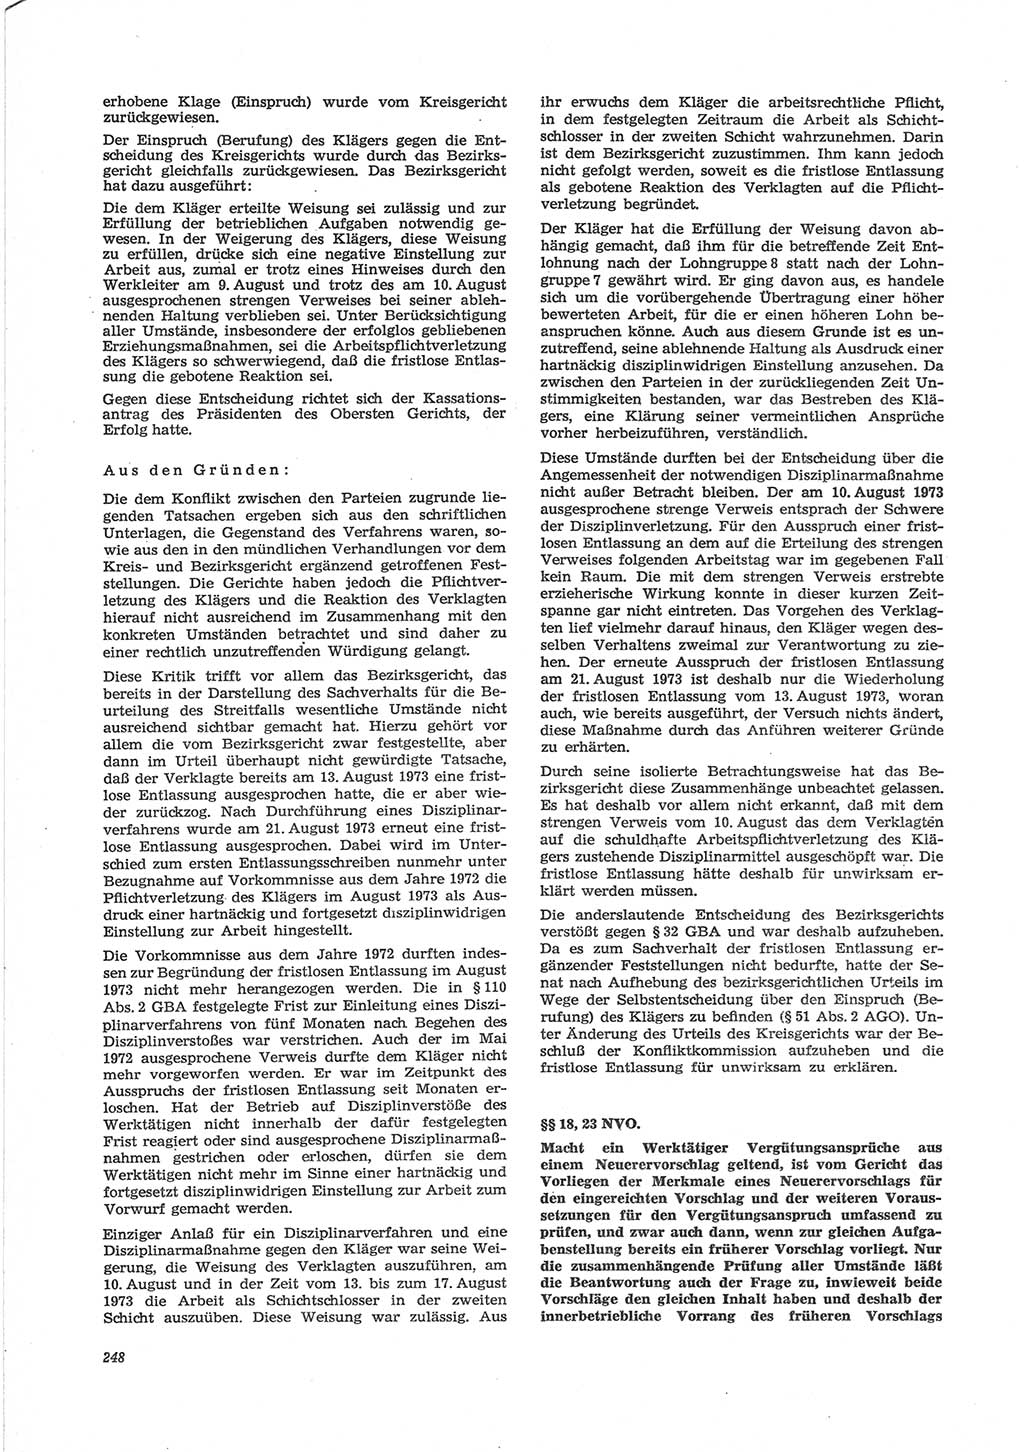 Neue Justiz (NJ), Zeitschrift für Recht und Rechtswissenschaft [Deutsche Demokratische Republik (DDR)], 28. Jahrgang 1974, Seite 248 (NJ DDR 1974, S. 248)